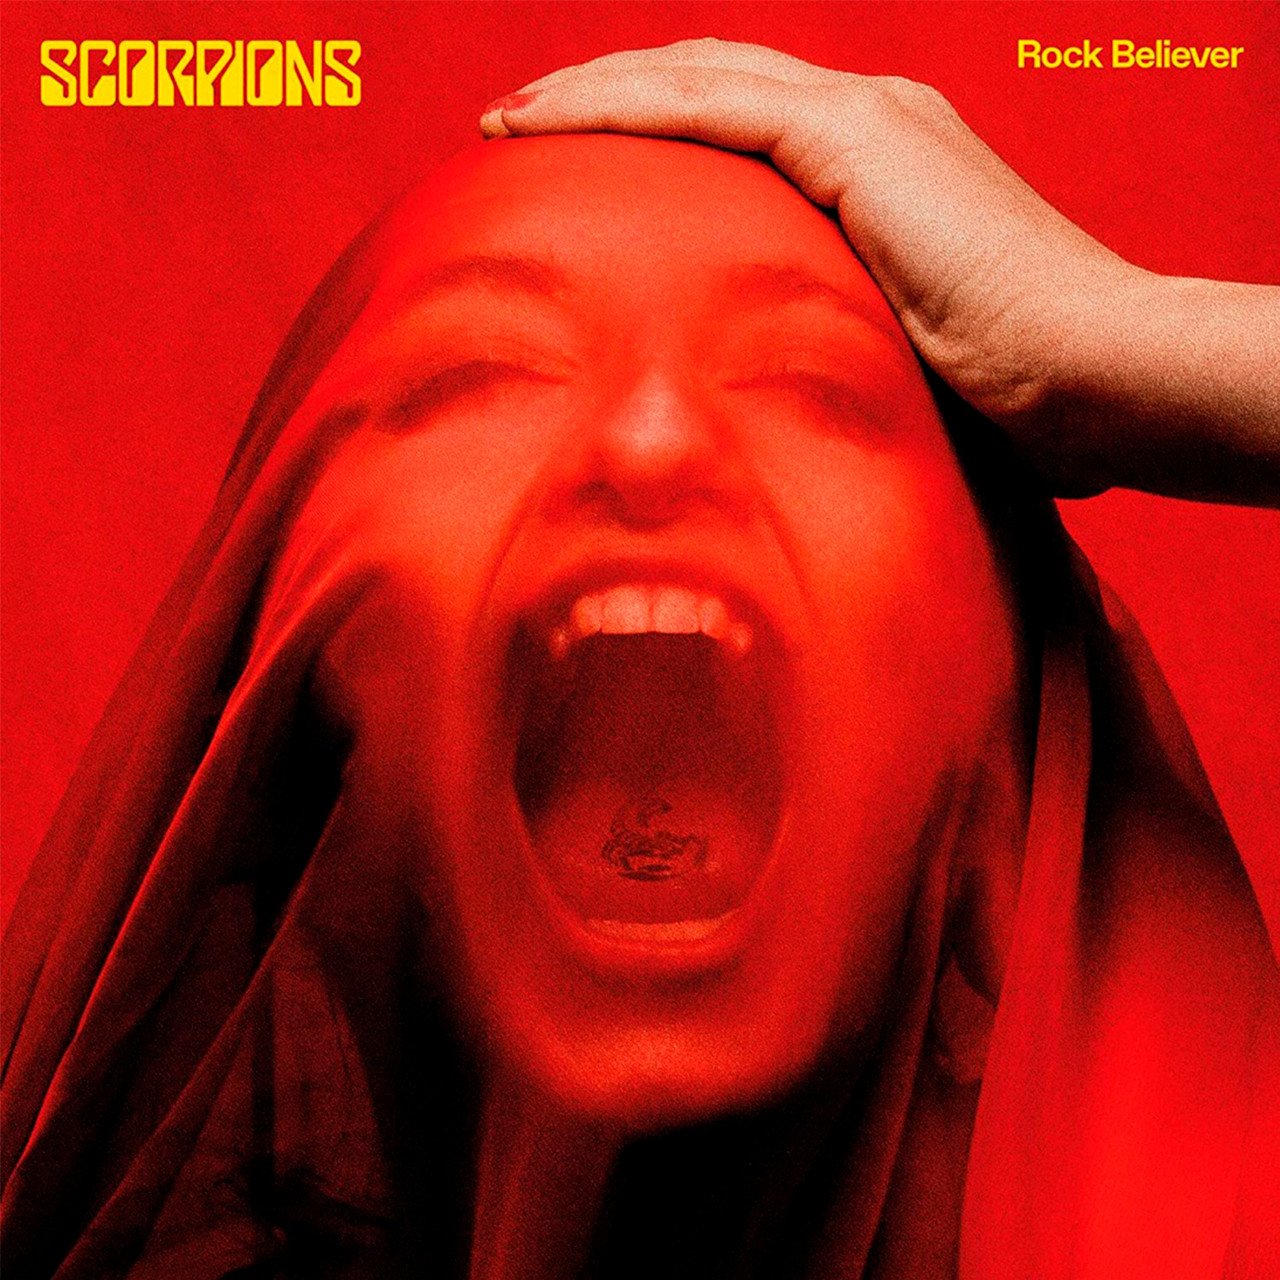 Scorpions - Rock Believer (Deluxe Edition) [2LP] Import